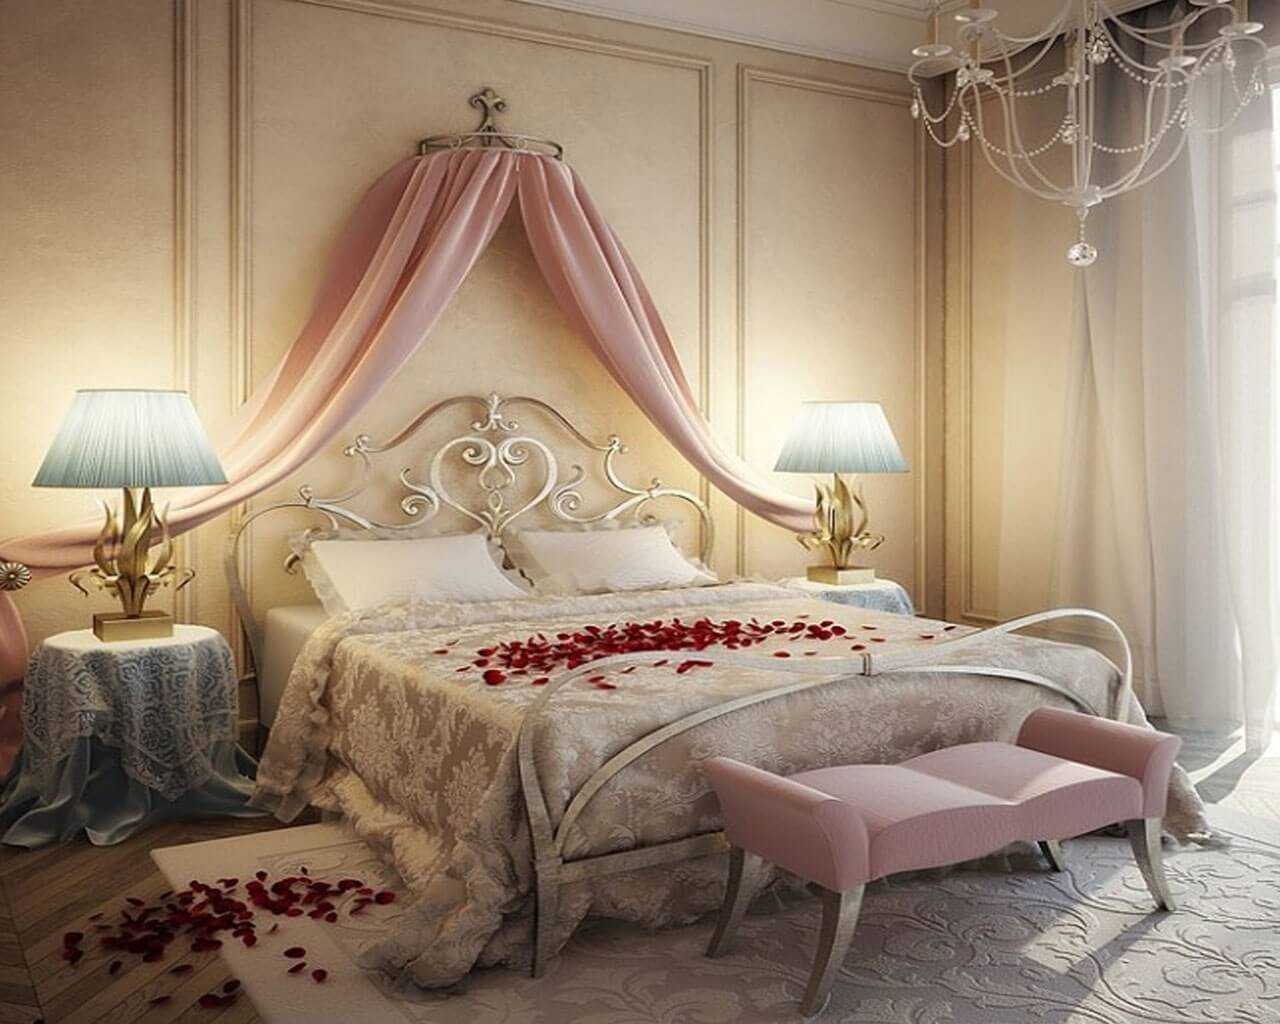 Как оформить спальню в романтическом стиле – фото идеи